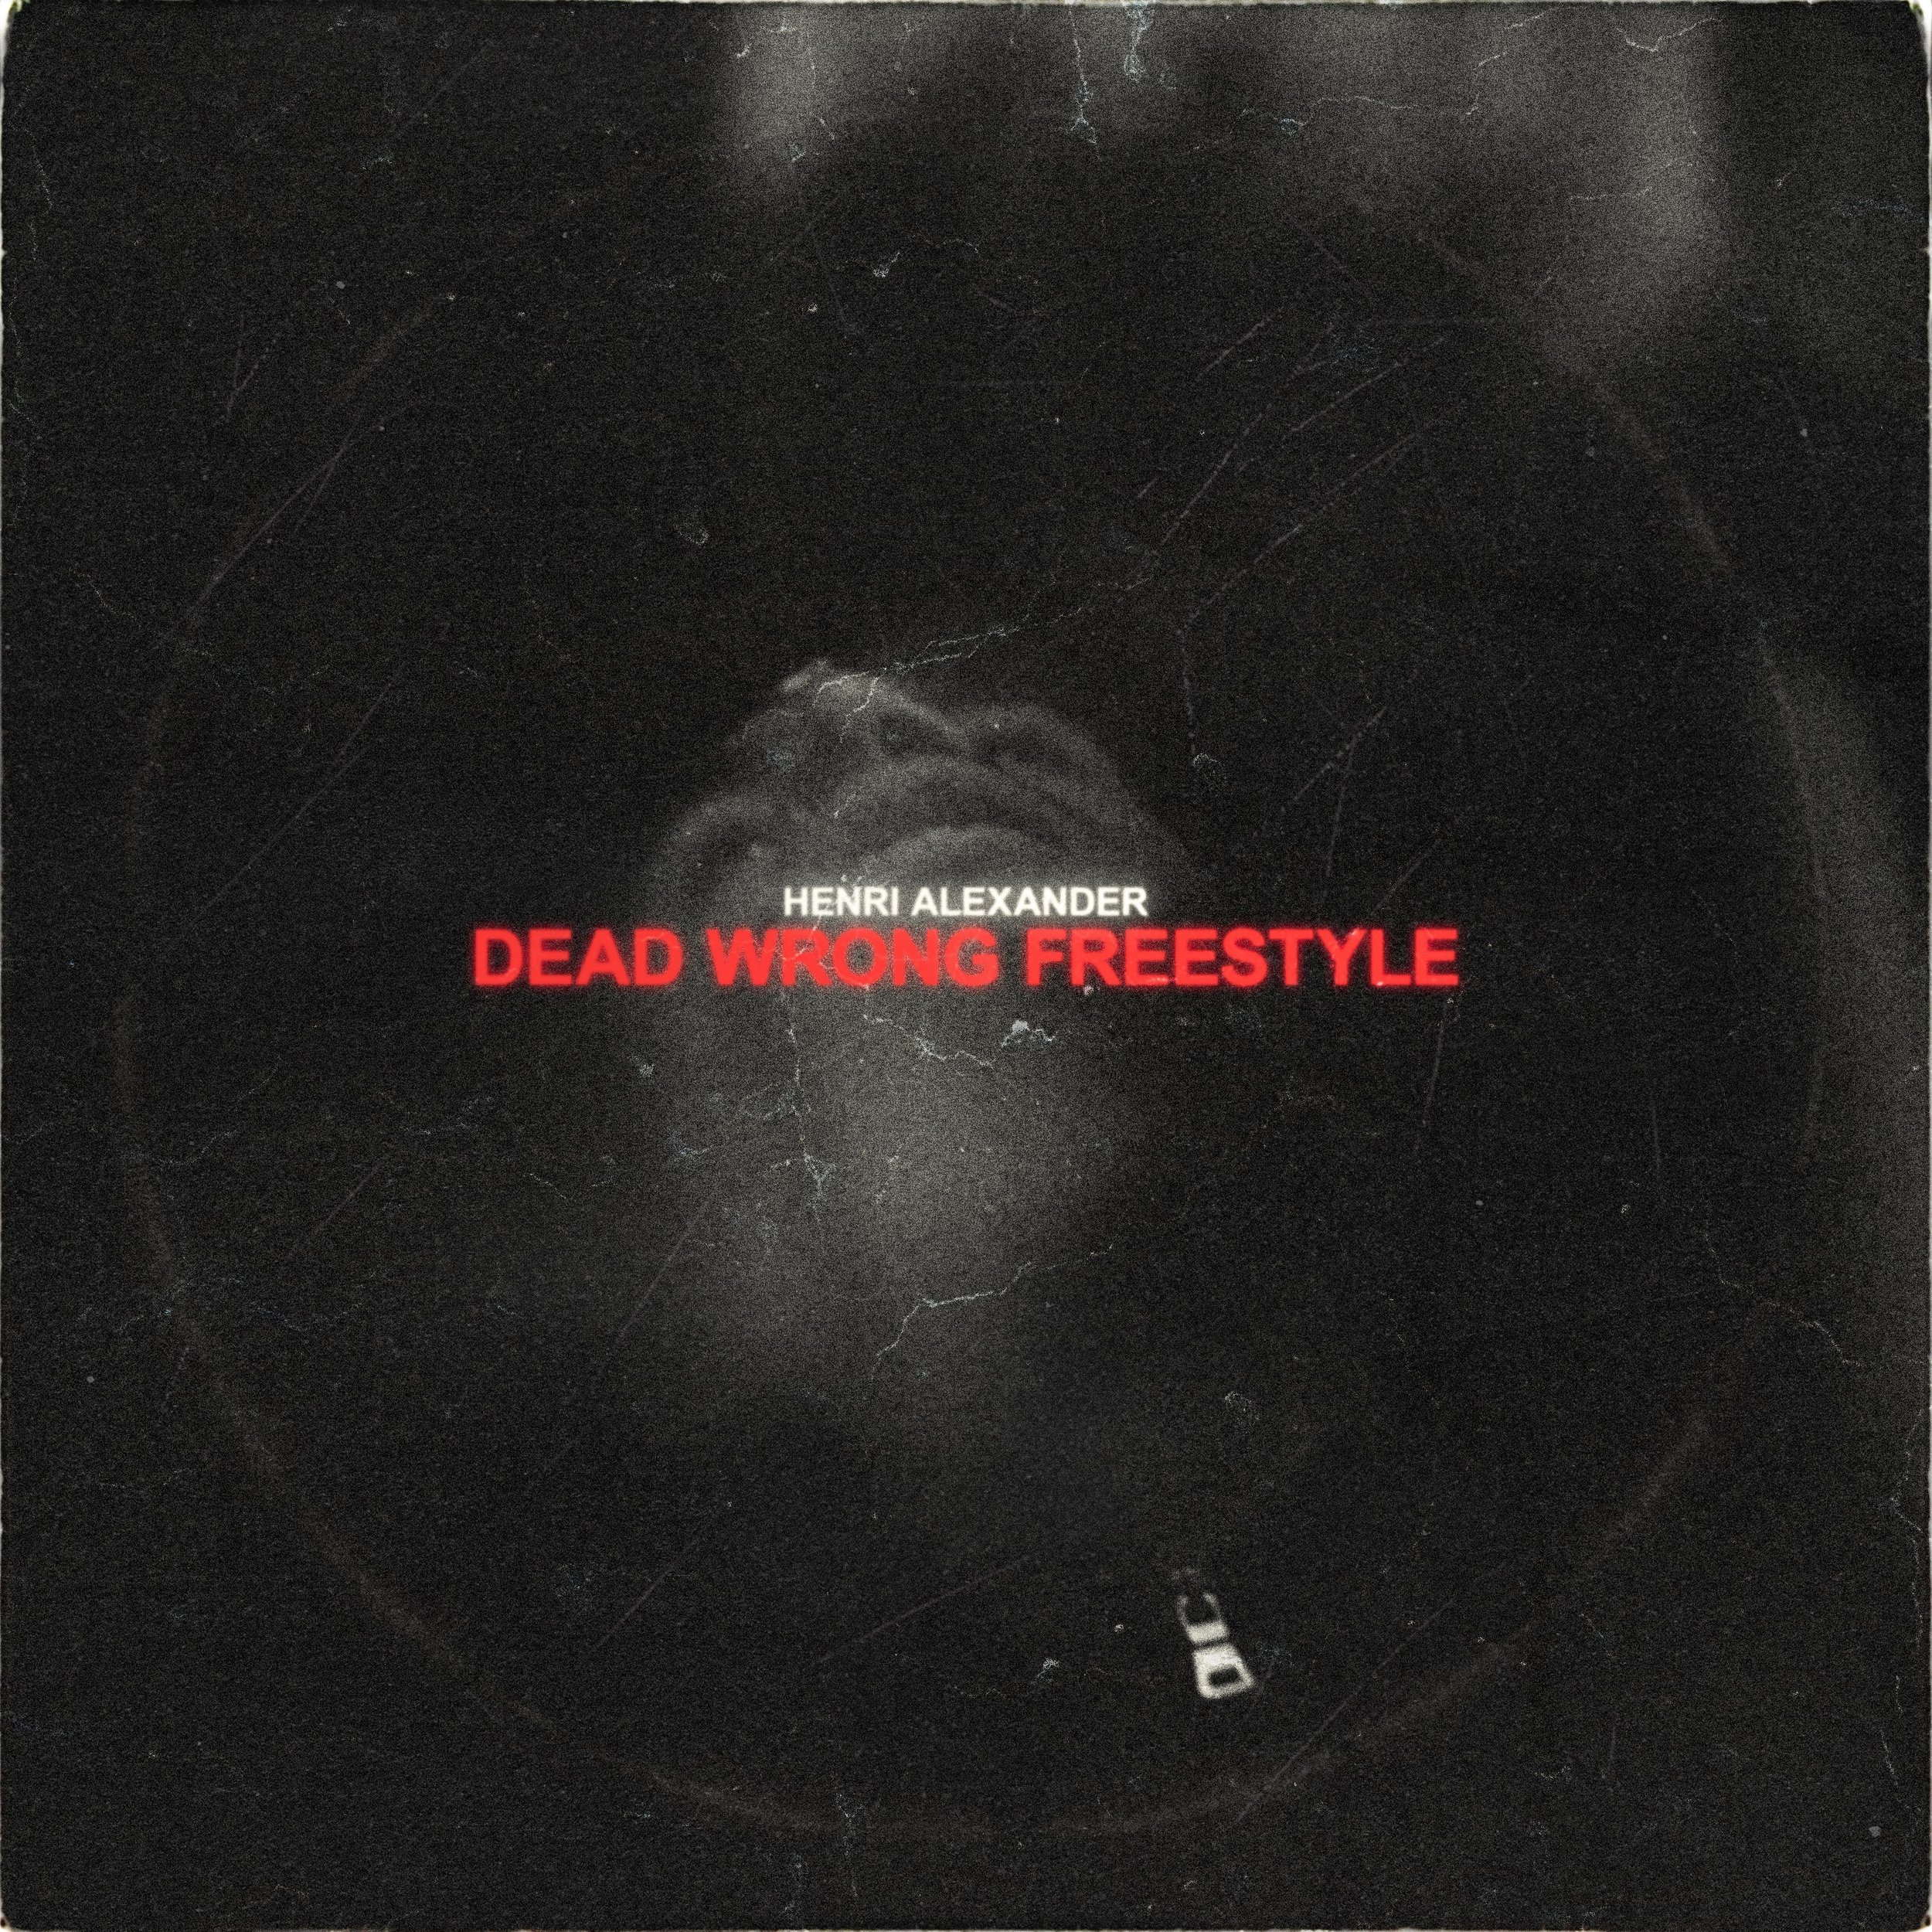 Henri Alexander - Dead Wrong Freestyle Cover [FINAL]-min.jpg